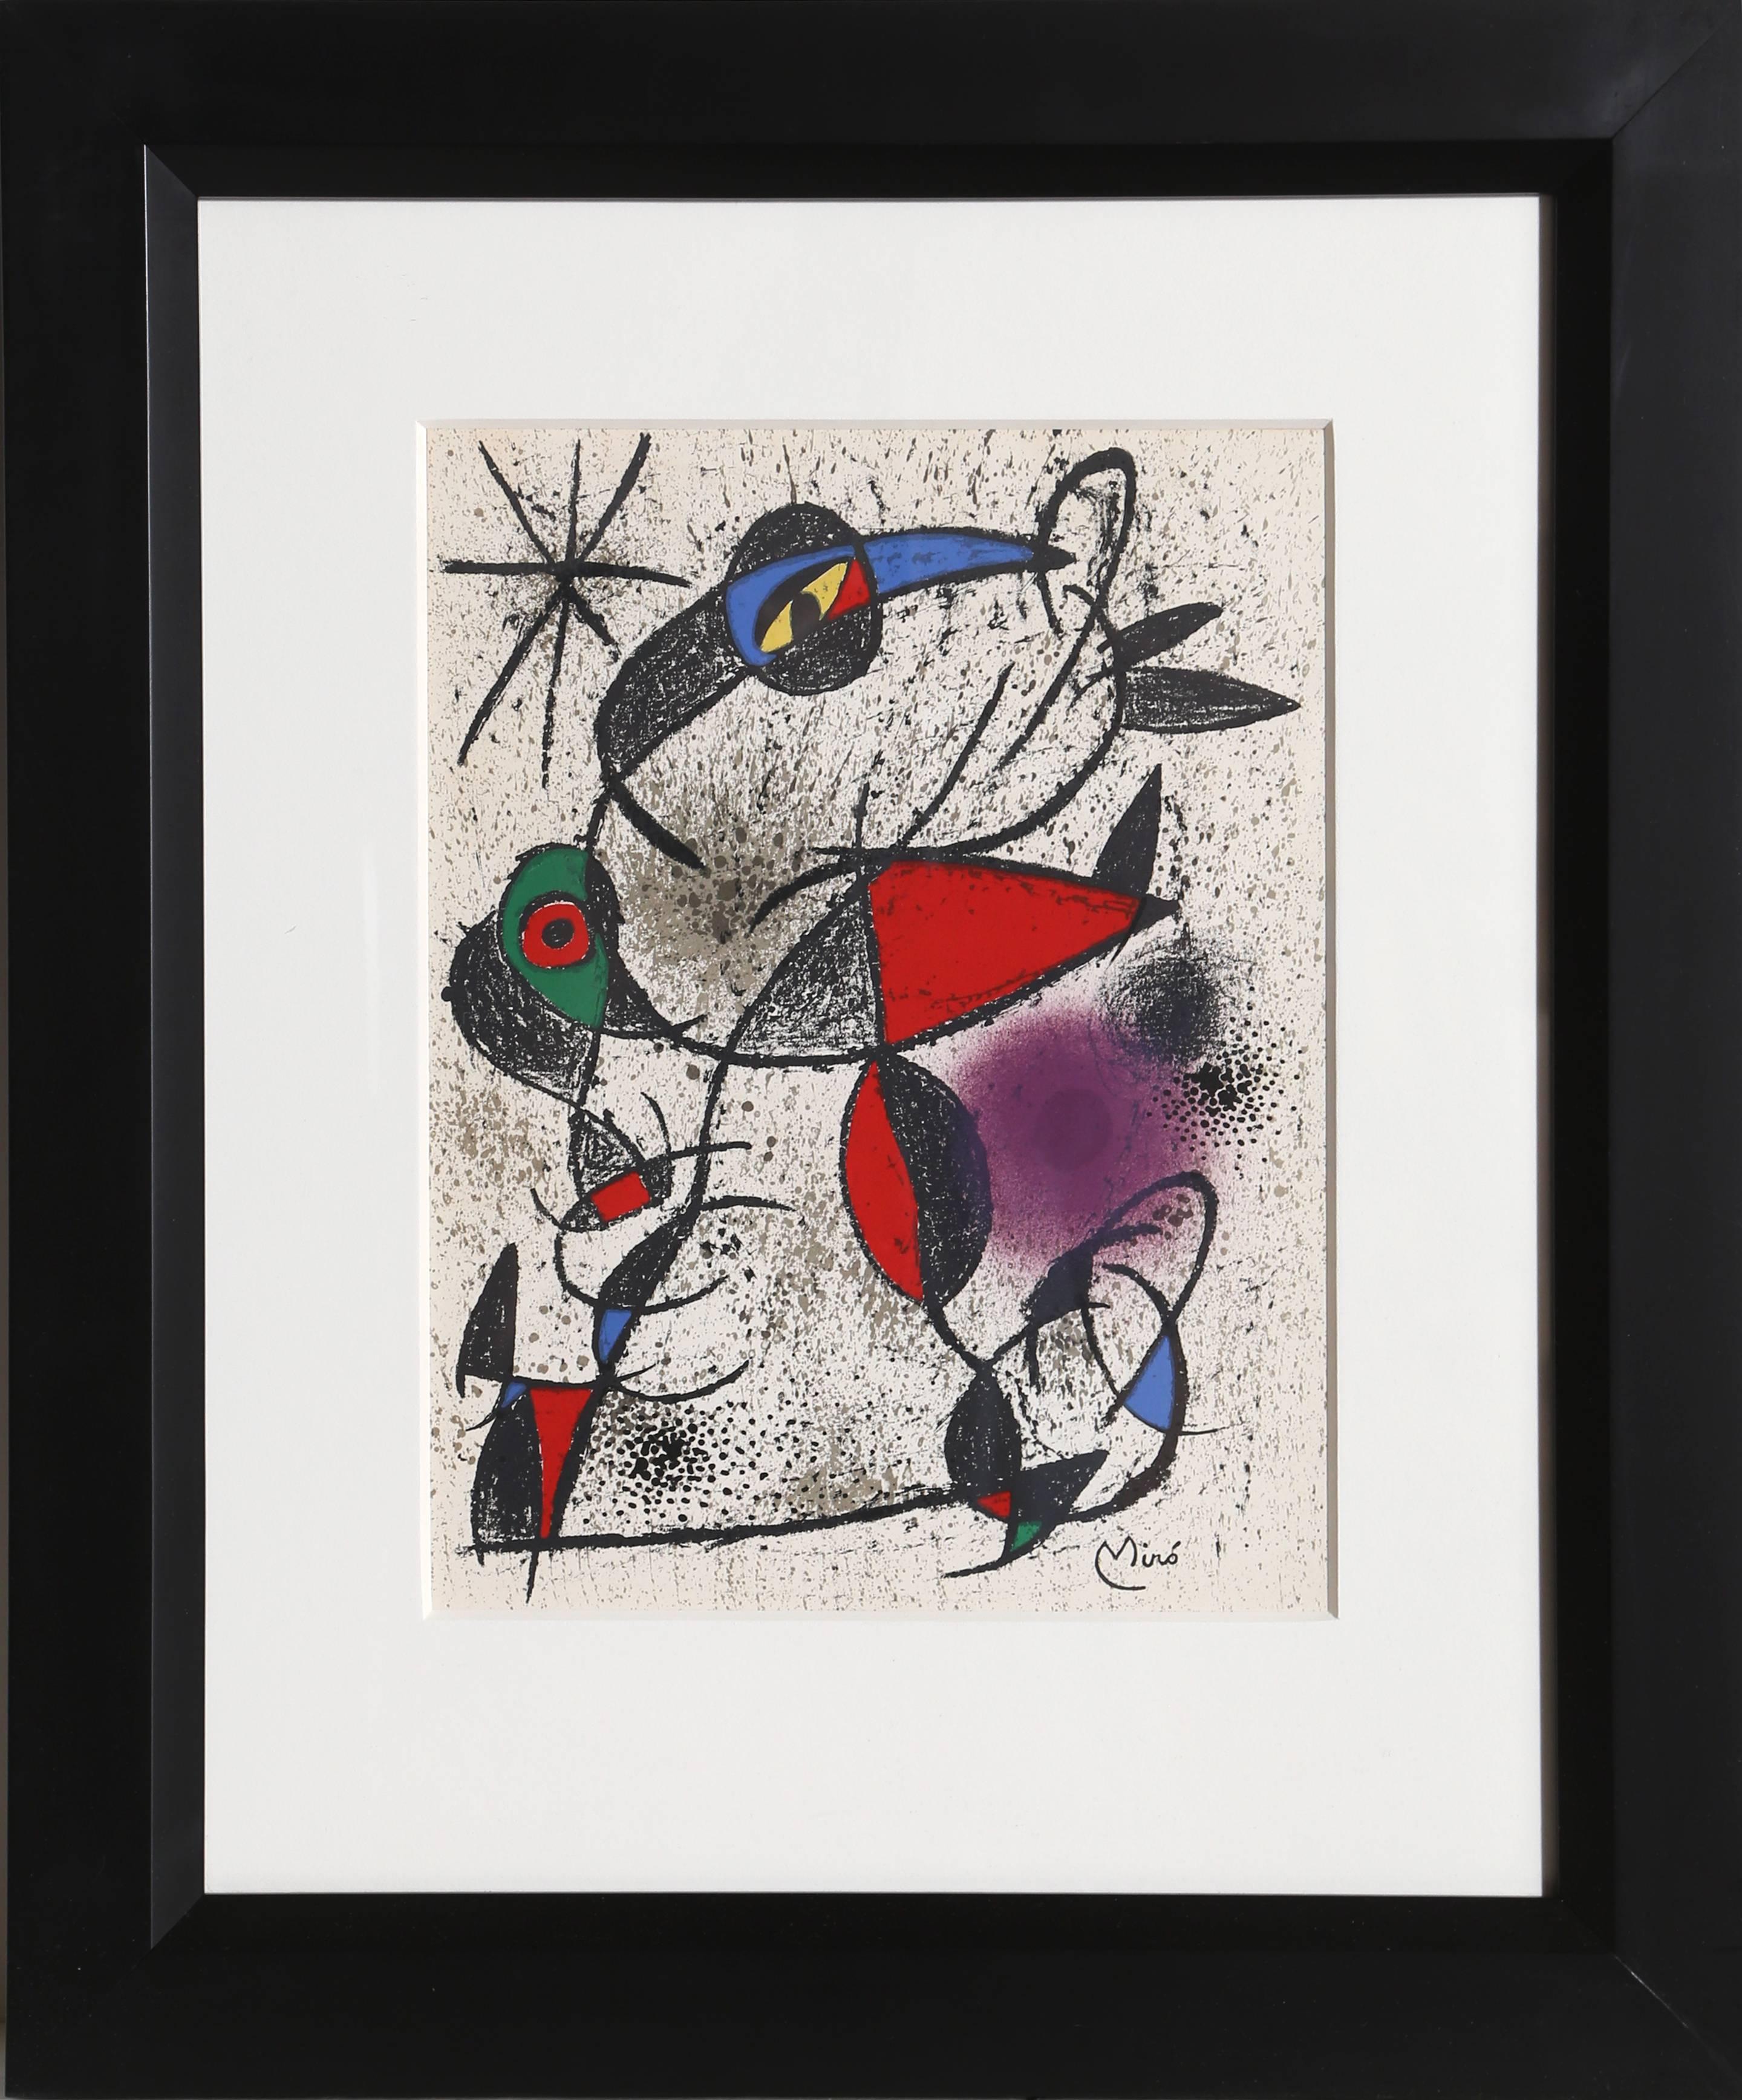 Jaillie du Calcaire from Souvenirs de Portraits d'Artistes by Joan Miro - Print by Joan Miró